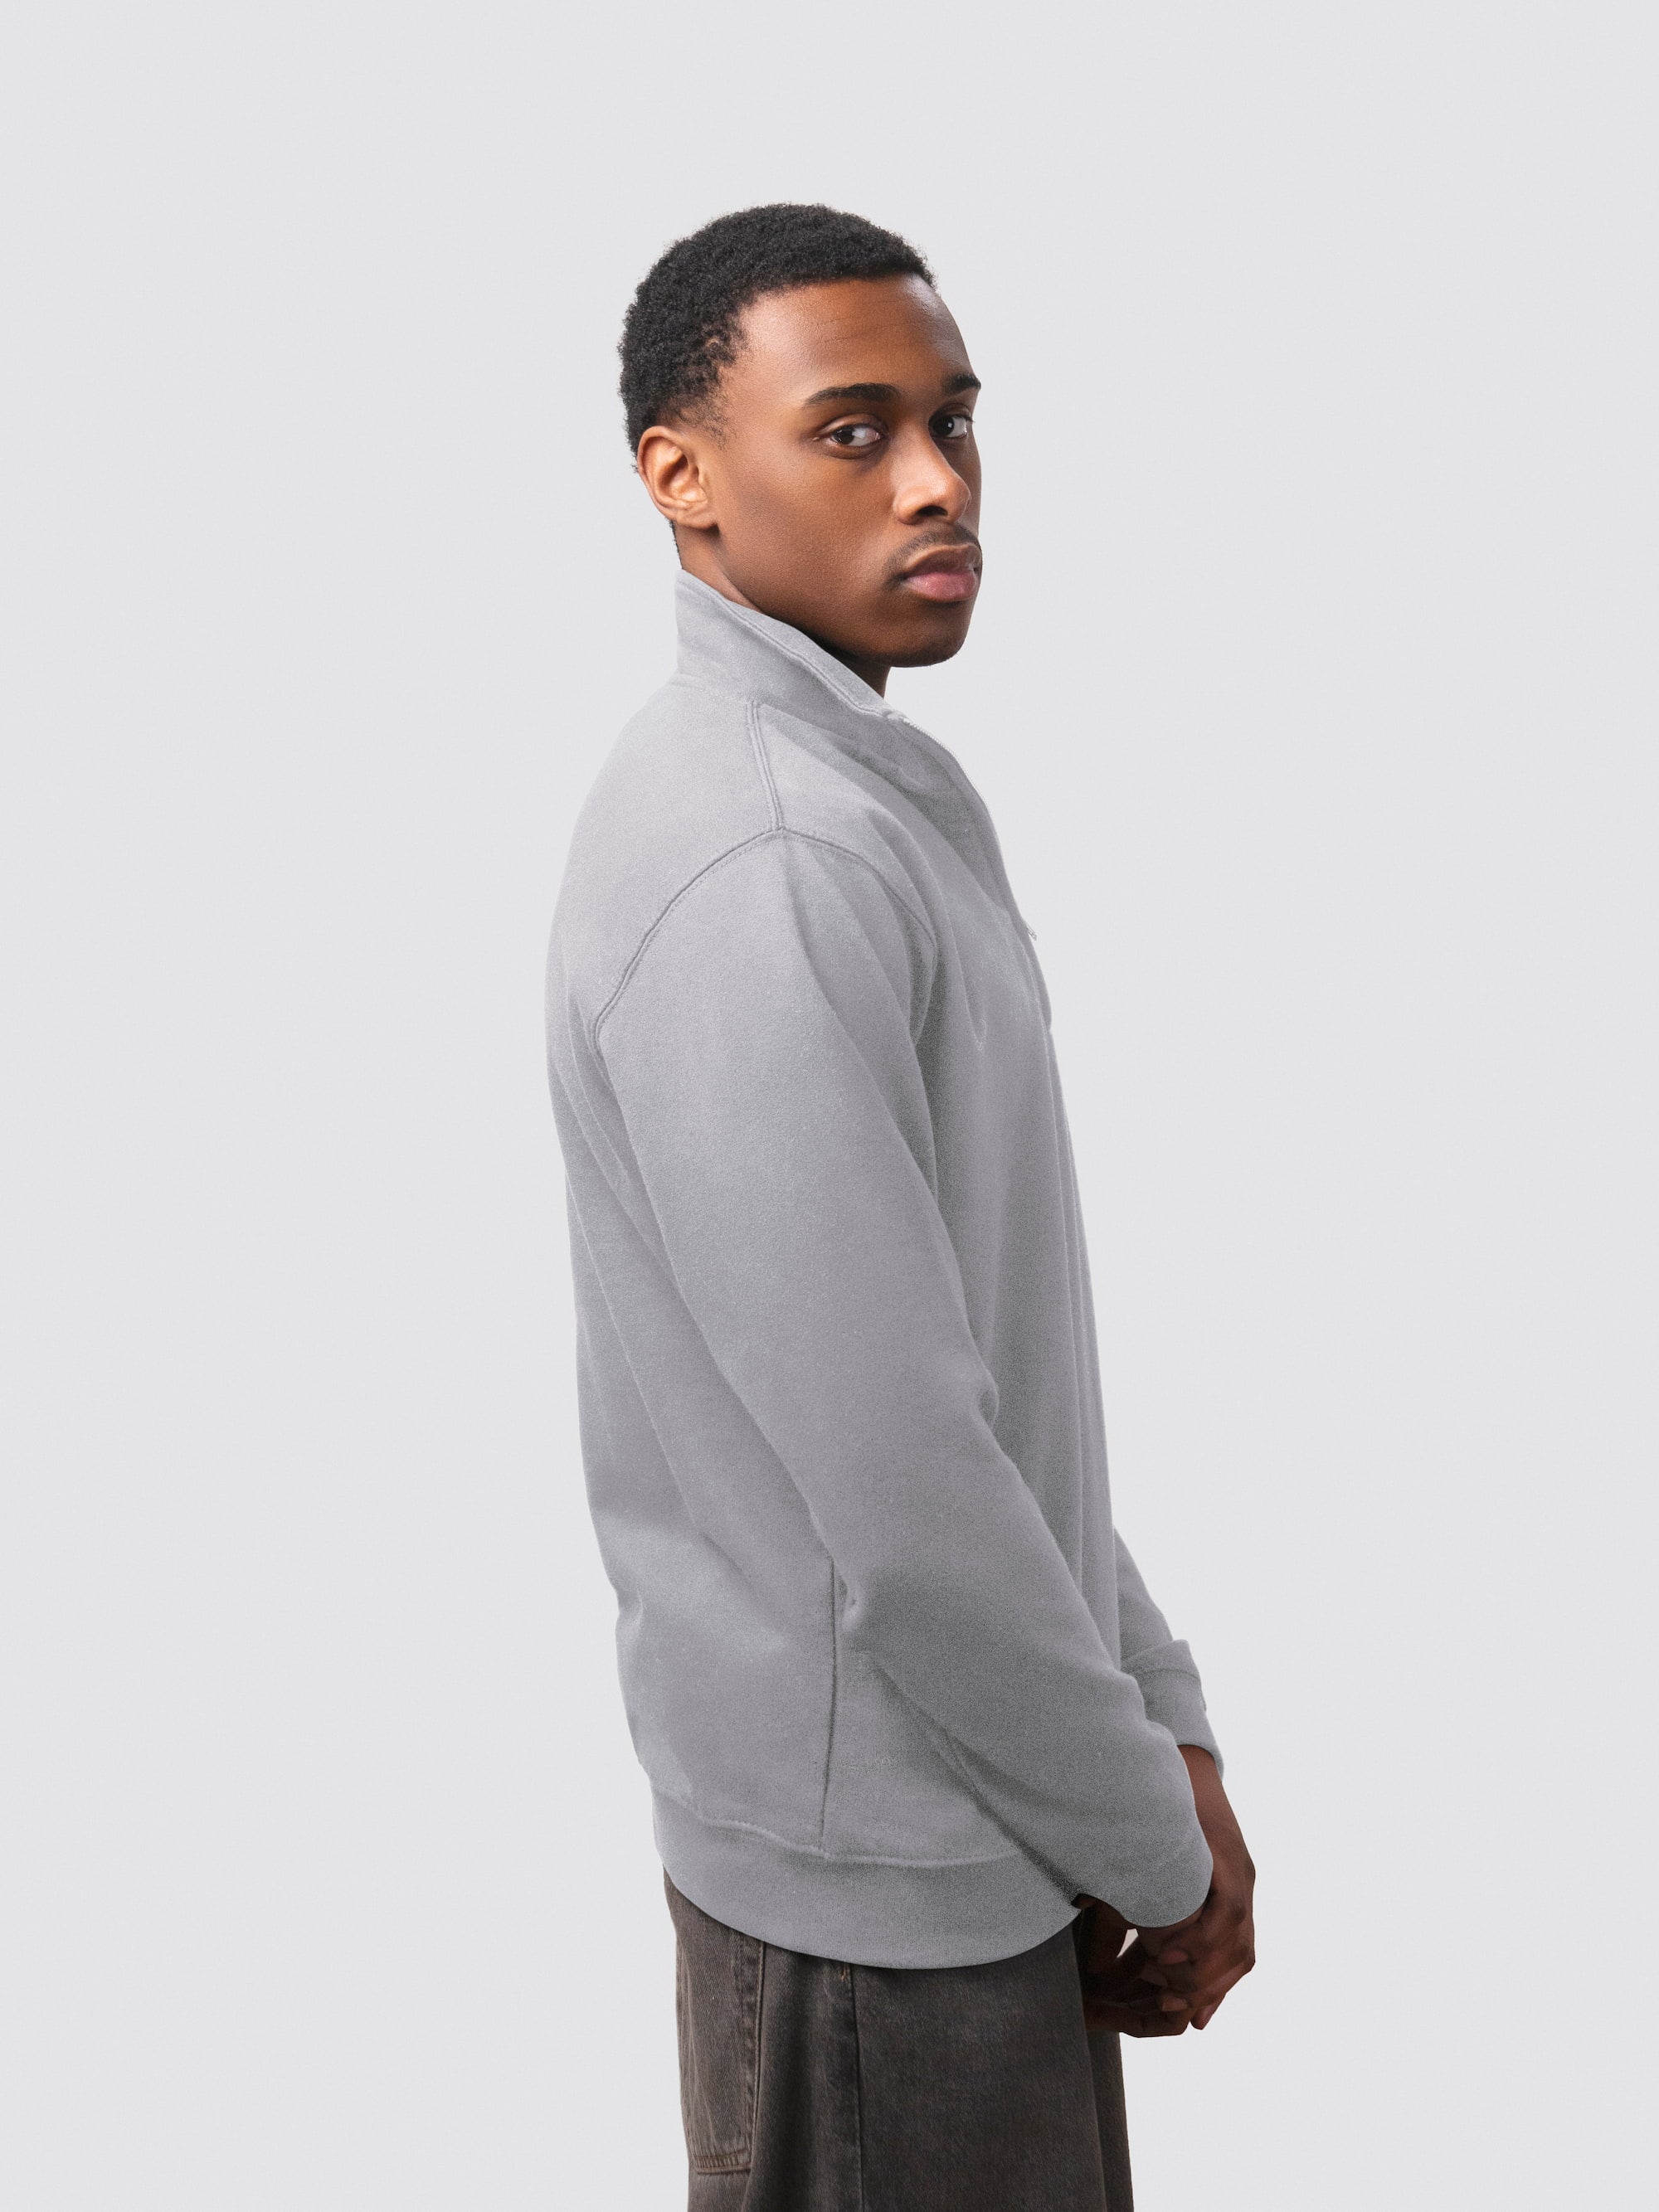 Personalisable quarter zip sweatshirt in heather grey